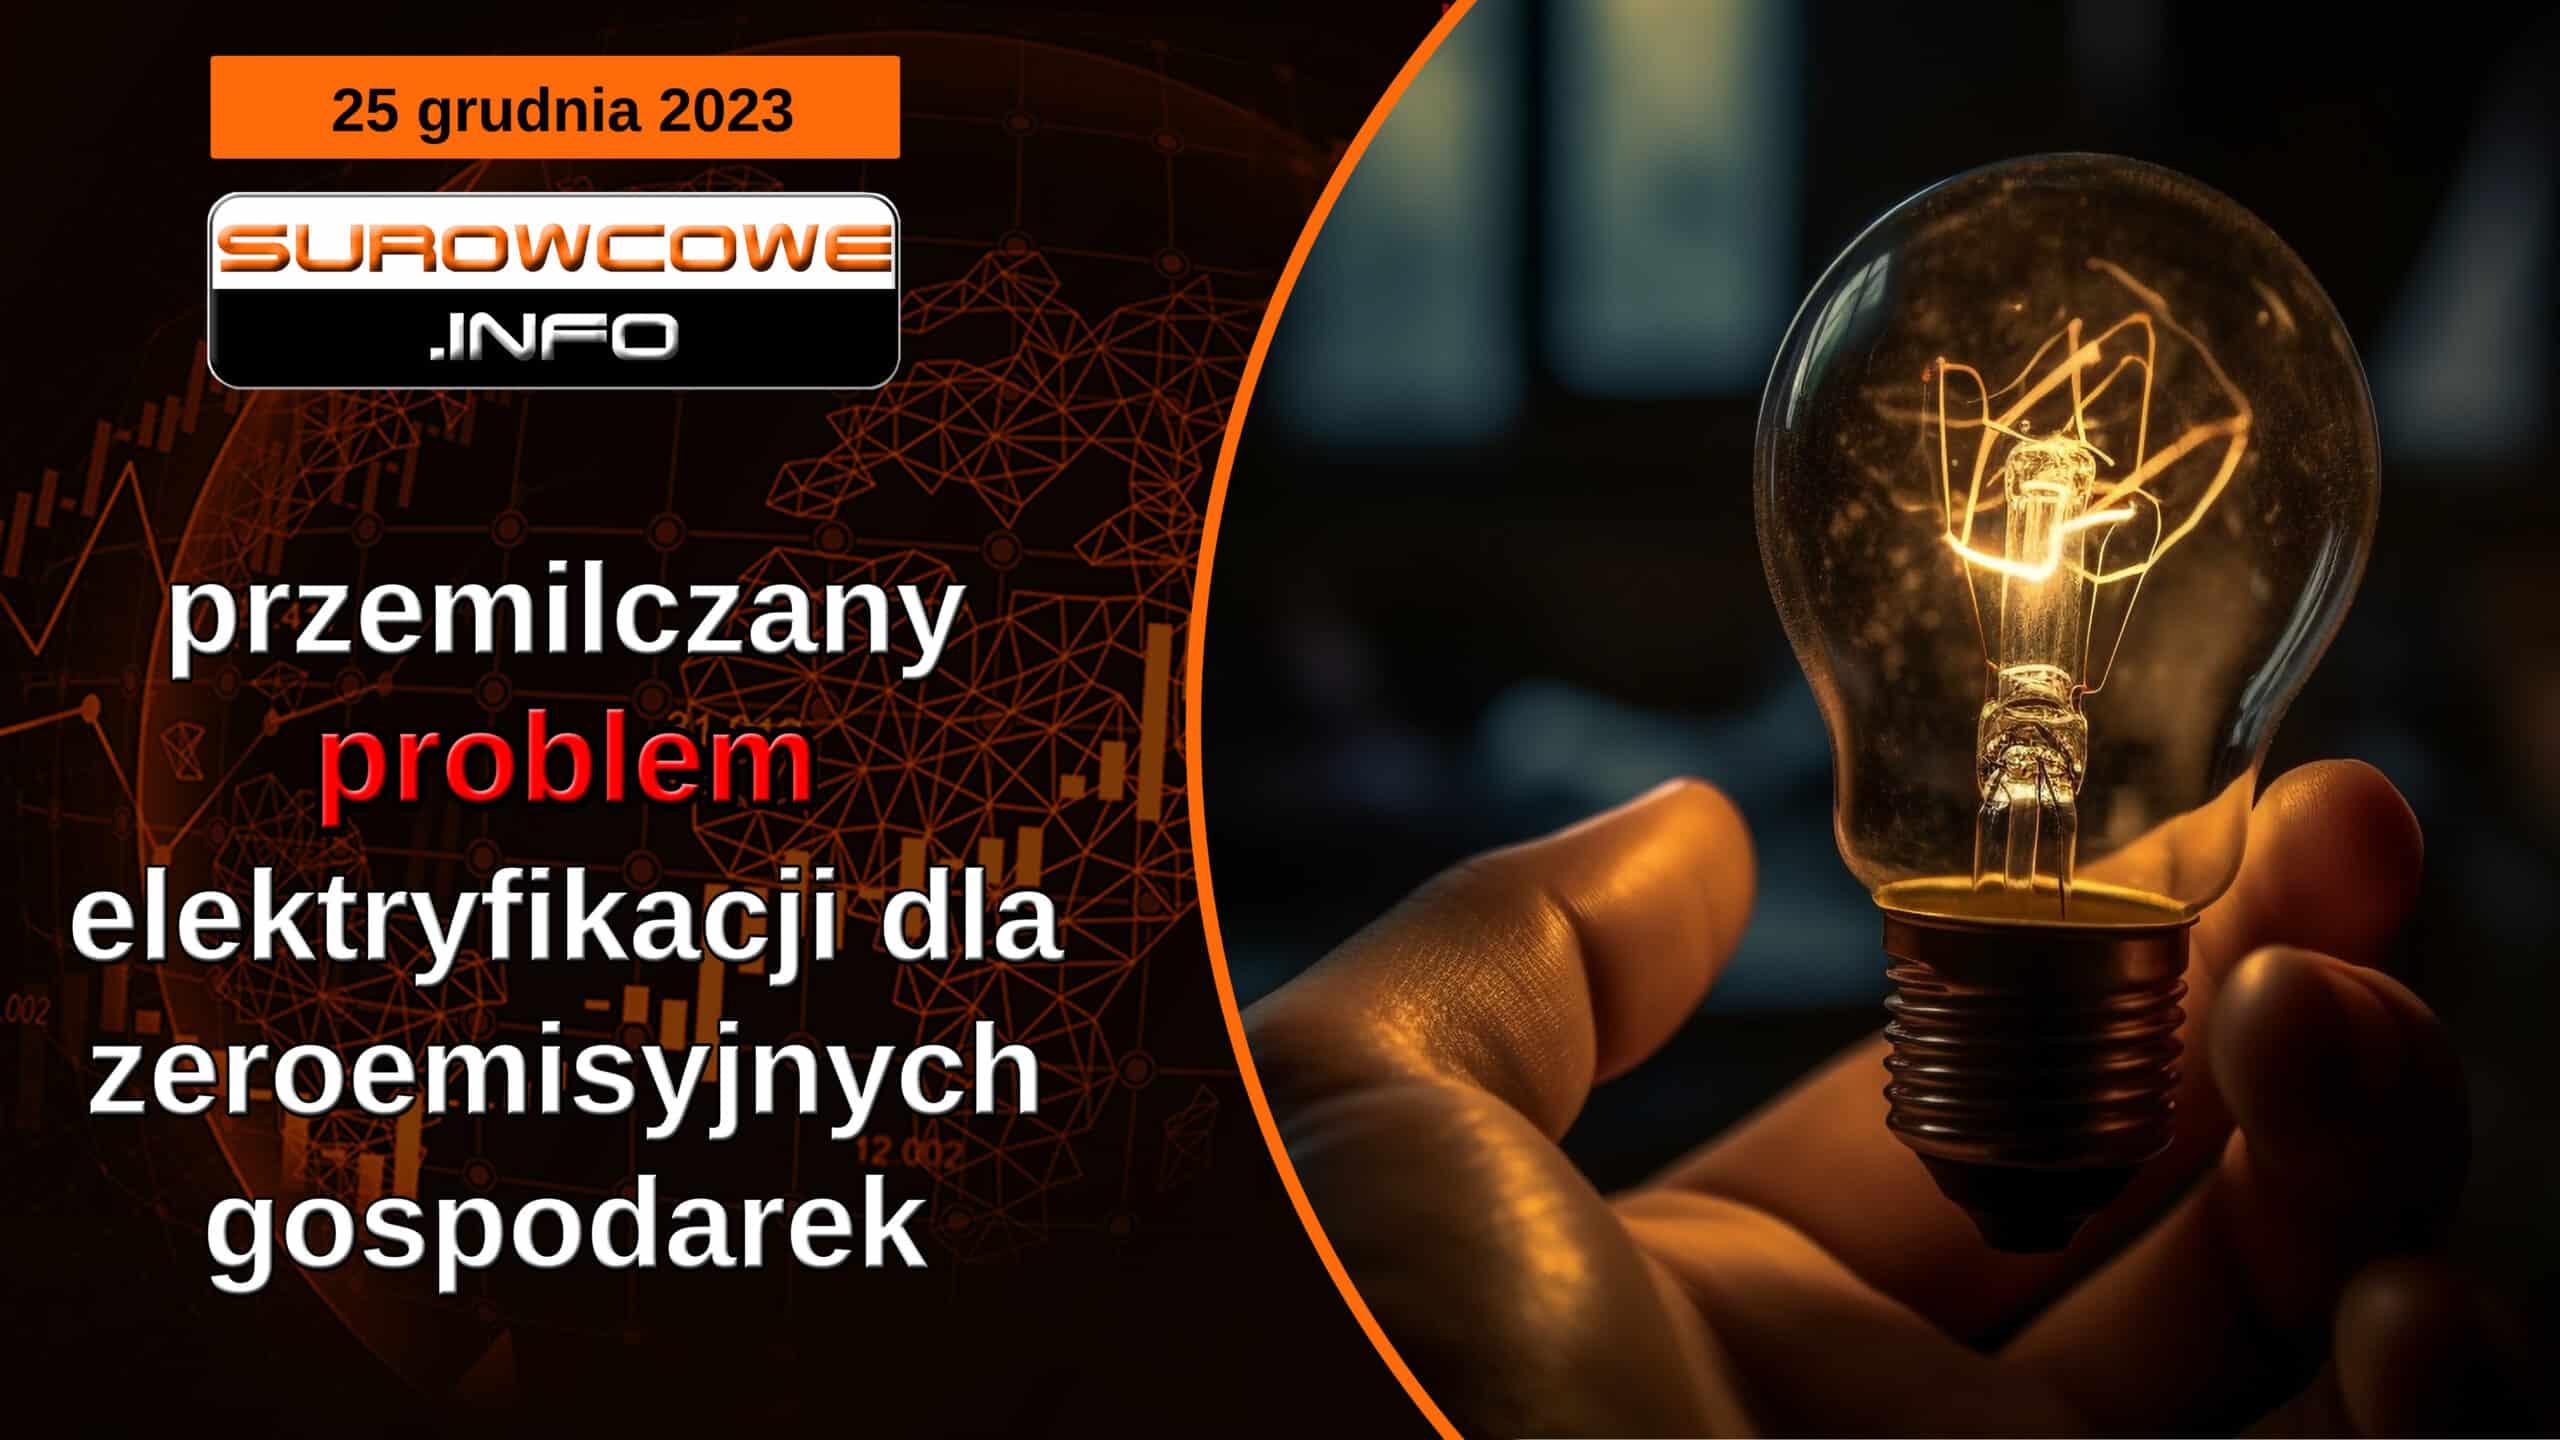 Surowcowe info 25 grudnia 2023 - przemilczany problem elektryfikacji dla zeroemisyjnych gospodarek